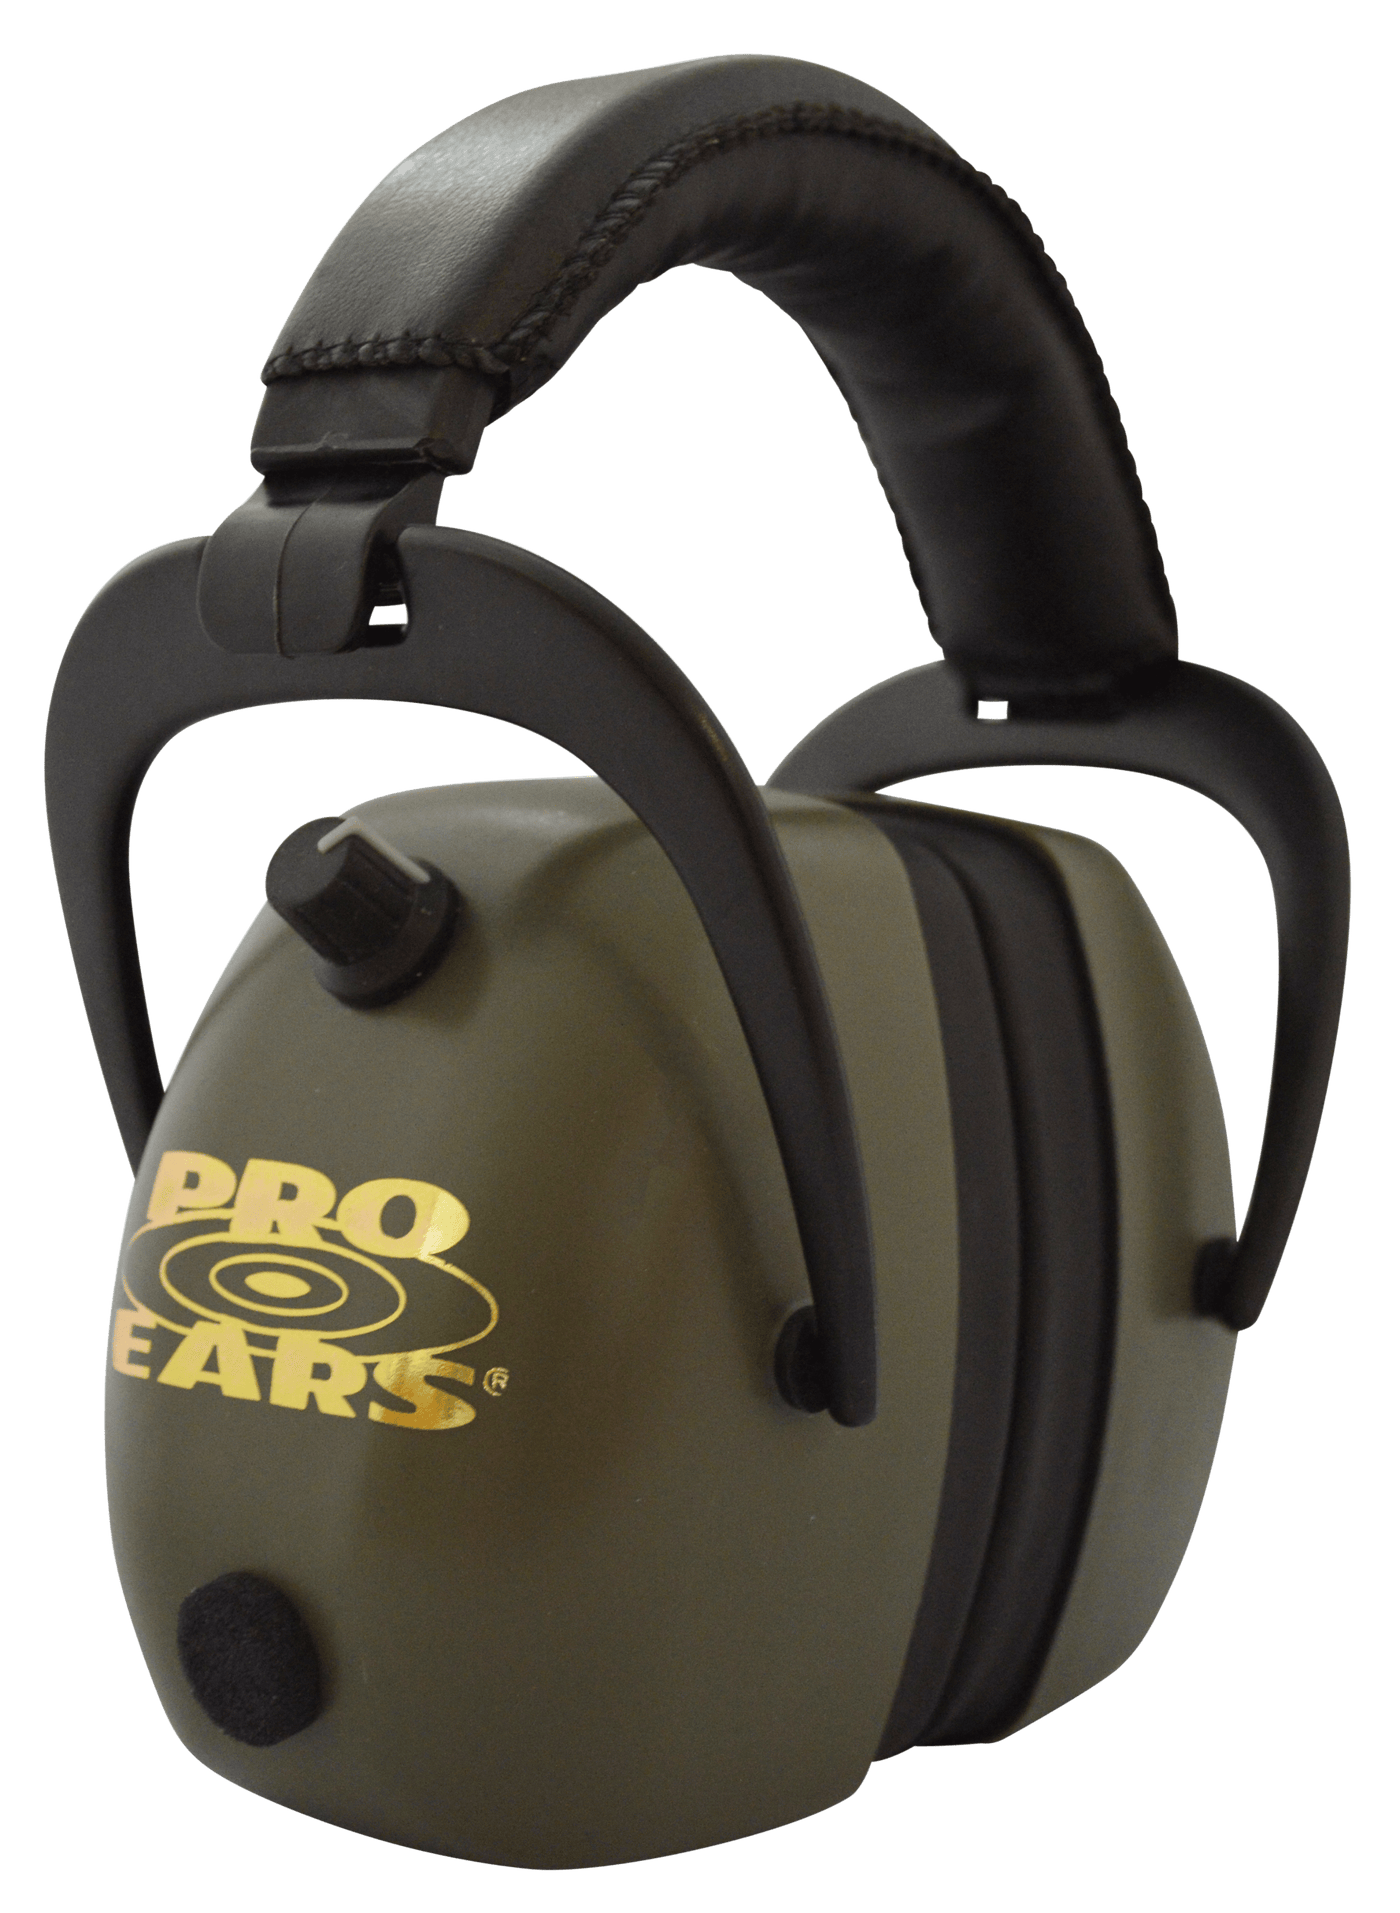 Pro Ears Pro Ears Gold Ii, Proears Peg2rmg  Gold Ii 30 Green Shooting